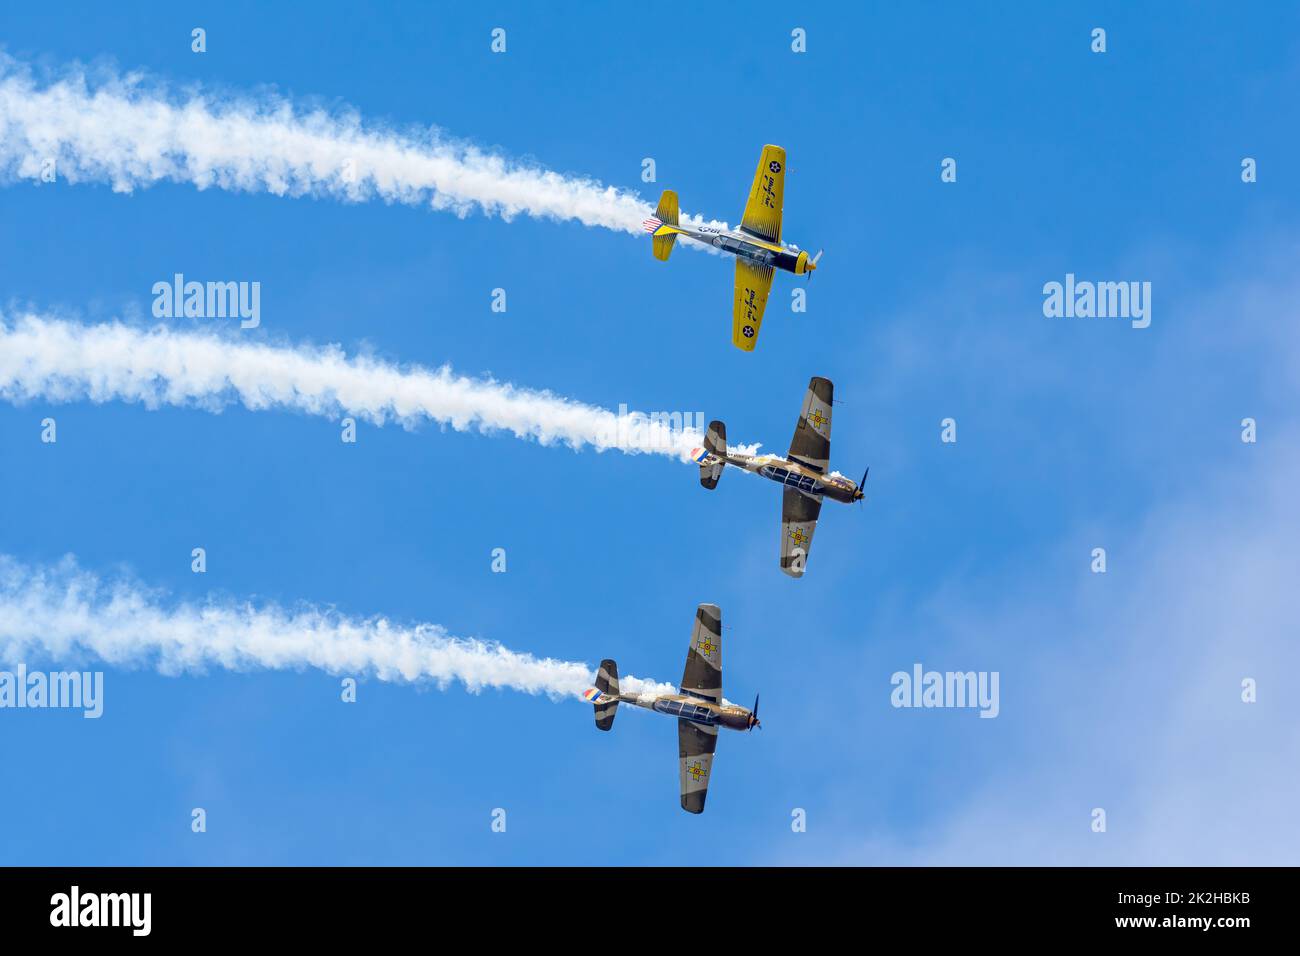 Bucarest, Roumanie, 4 septembre 2022 : salon aérien avec des avions effectuant un vol acrobatique sur ciel bleu, équipe aéroclubul Romaniie Banque D'Images